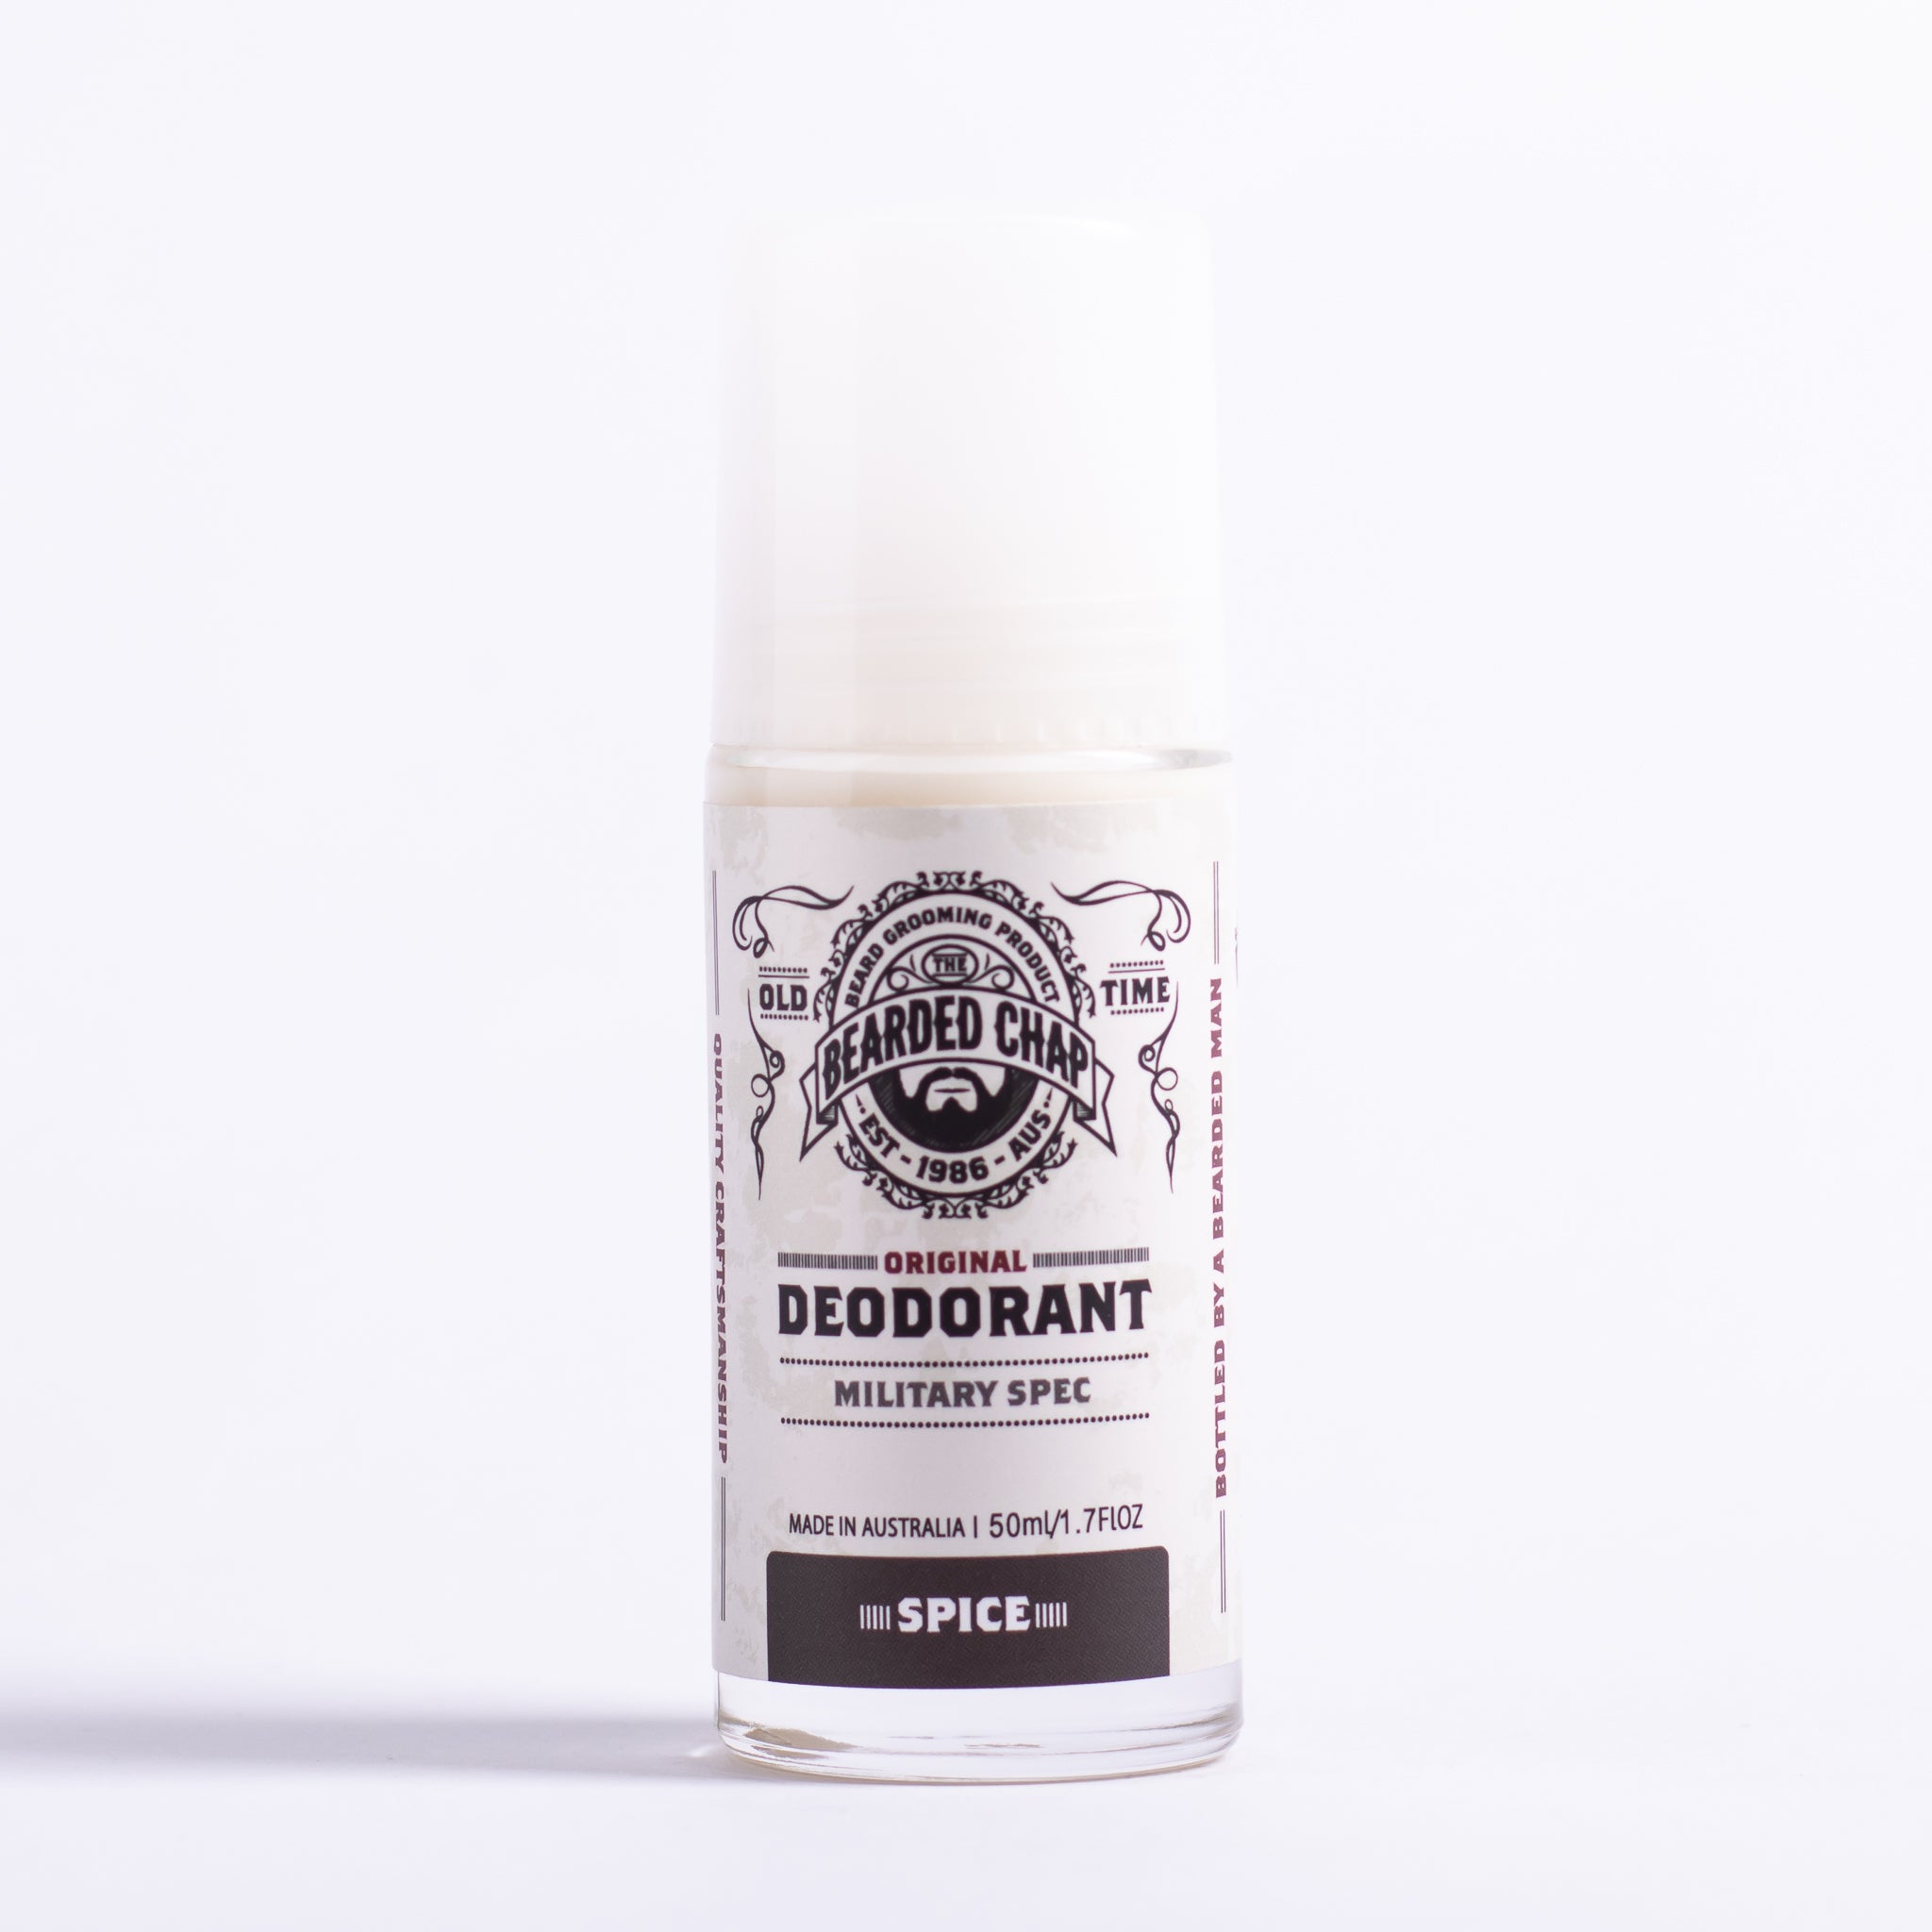 Classic Spice Deodorant